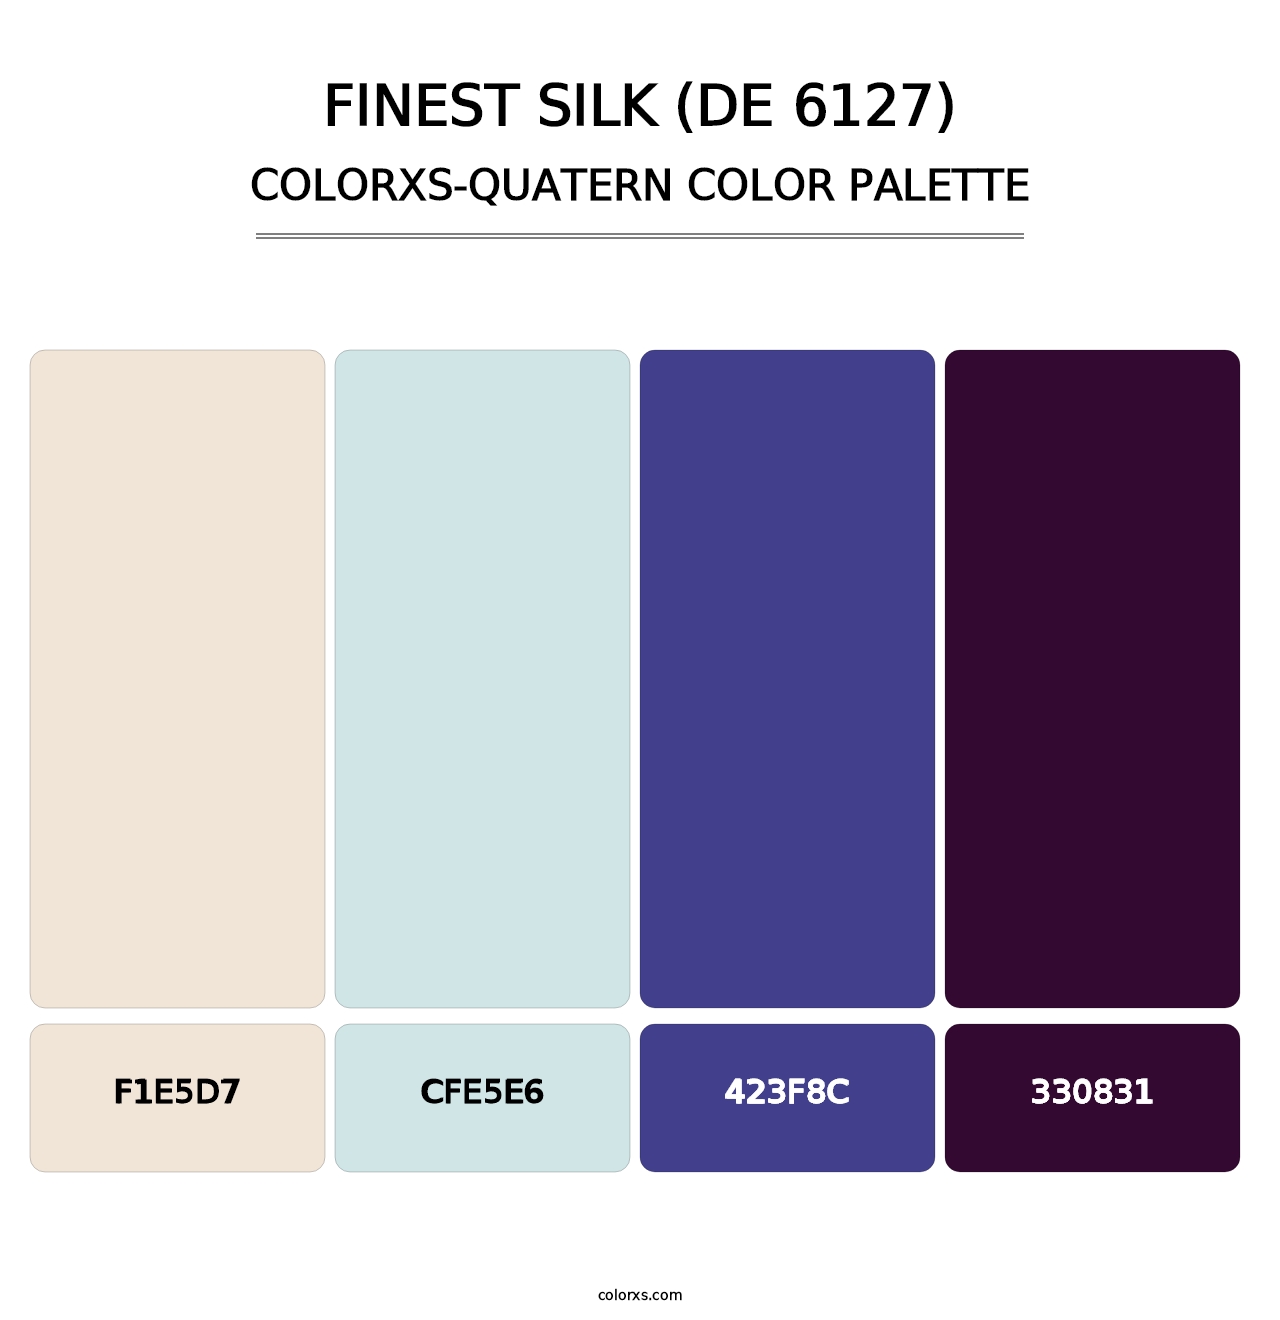 Finest Silk (DE 6127) - Colorxs Quatern Palette